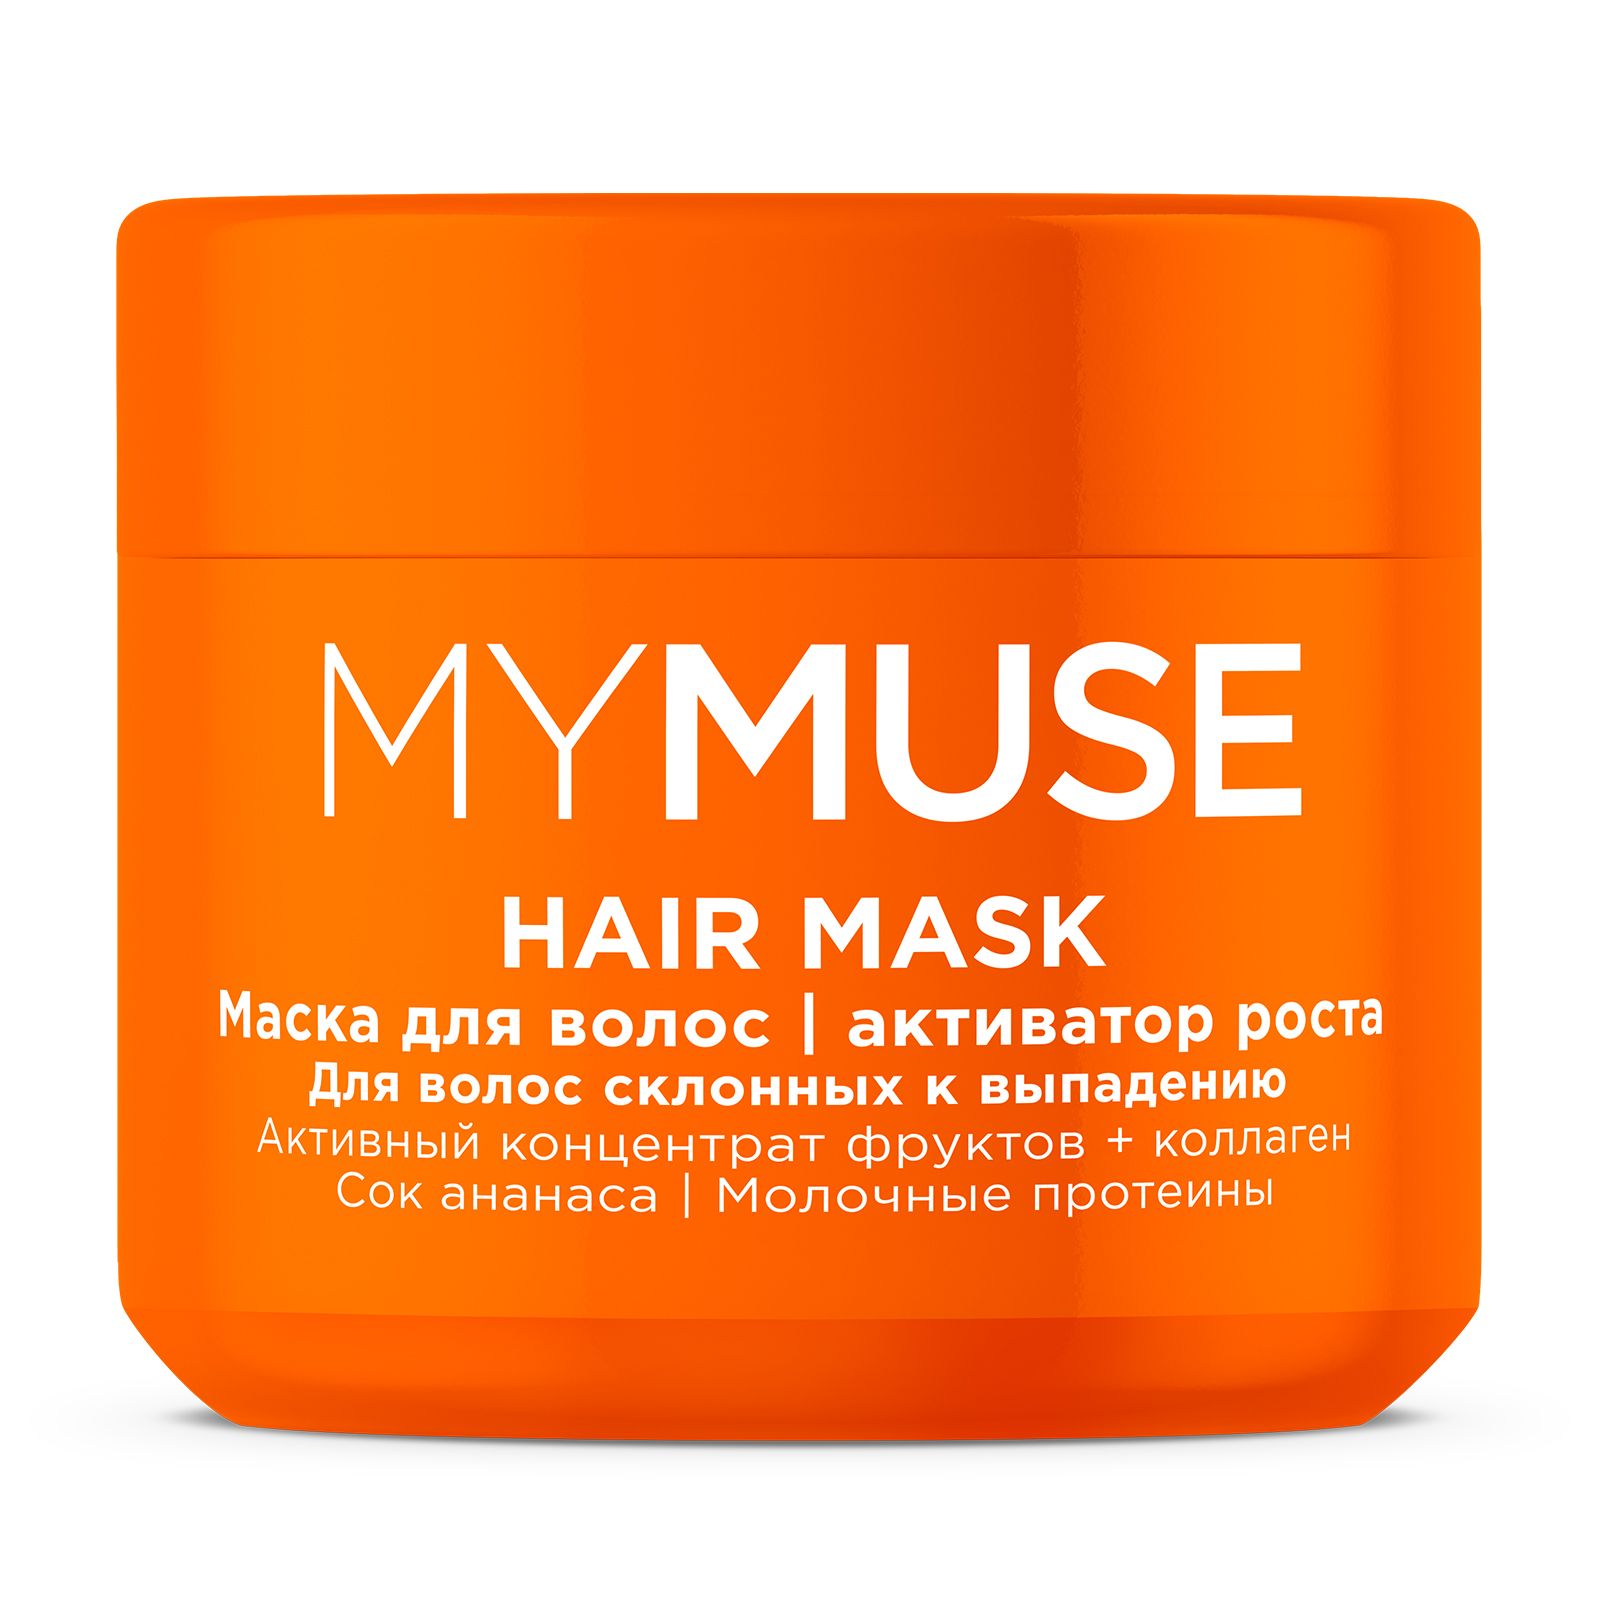 Маска для волос MYMUSE активатор роста 300 мл